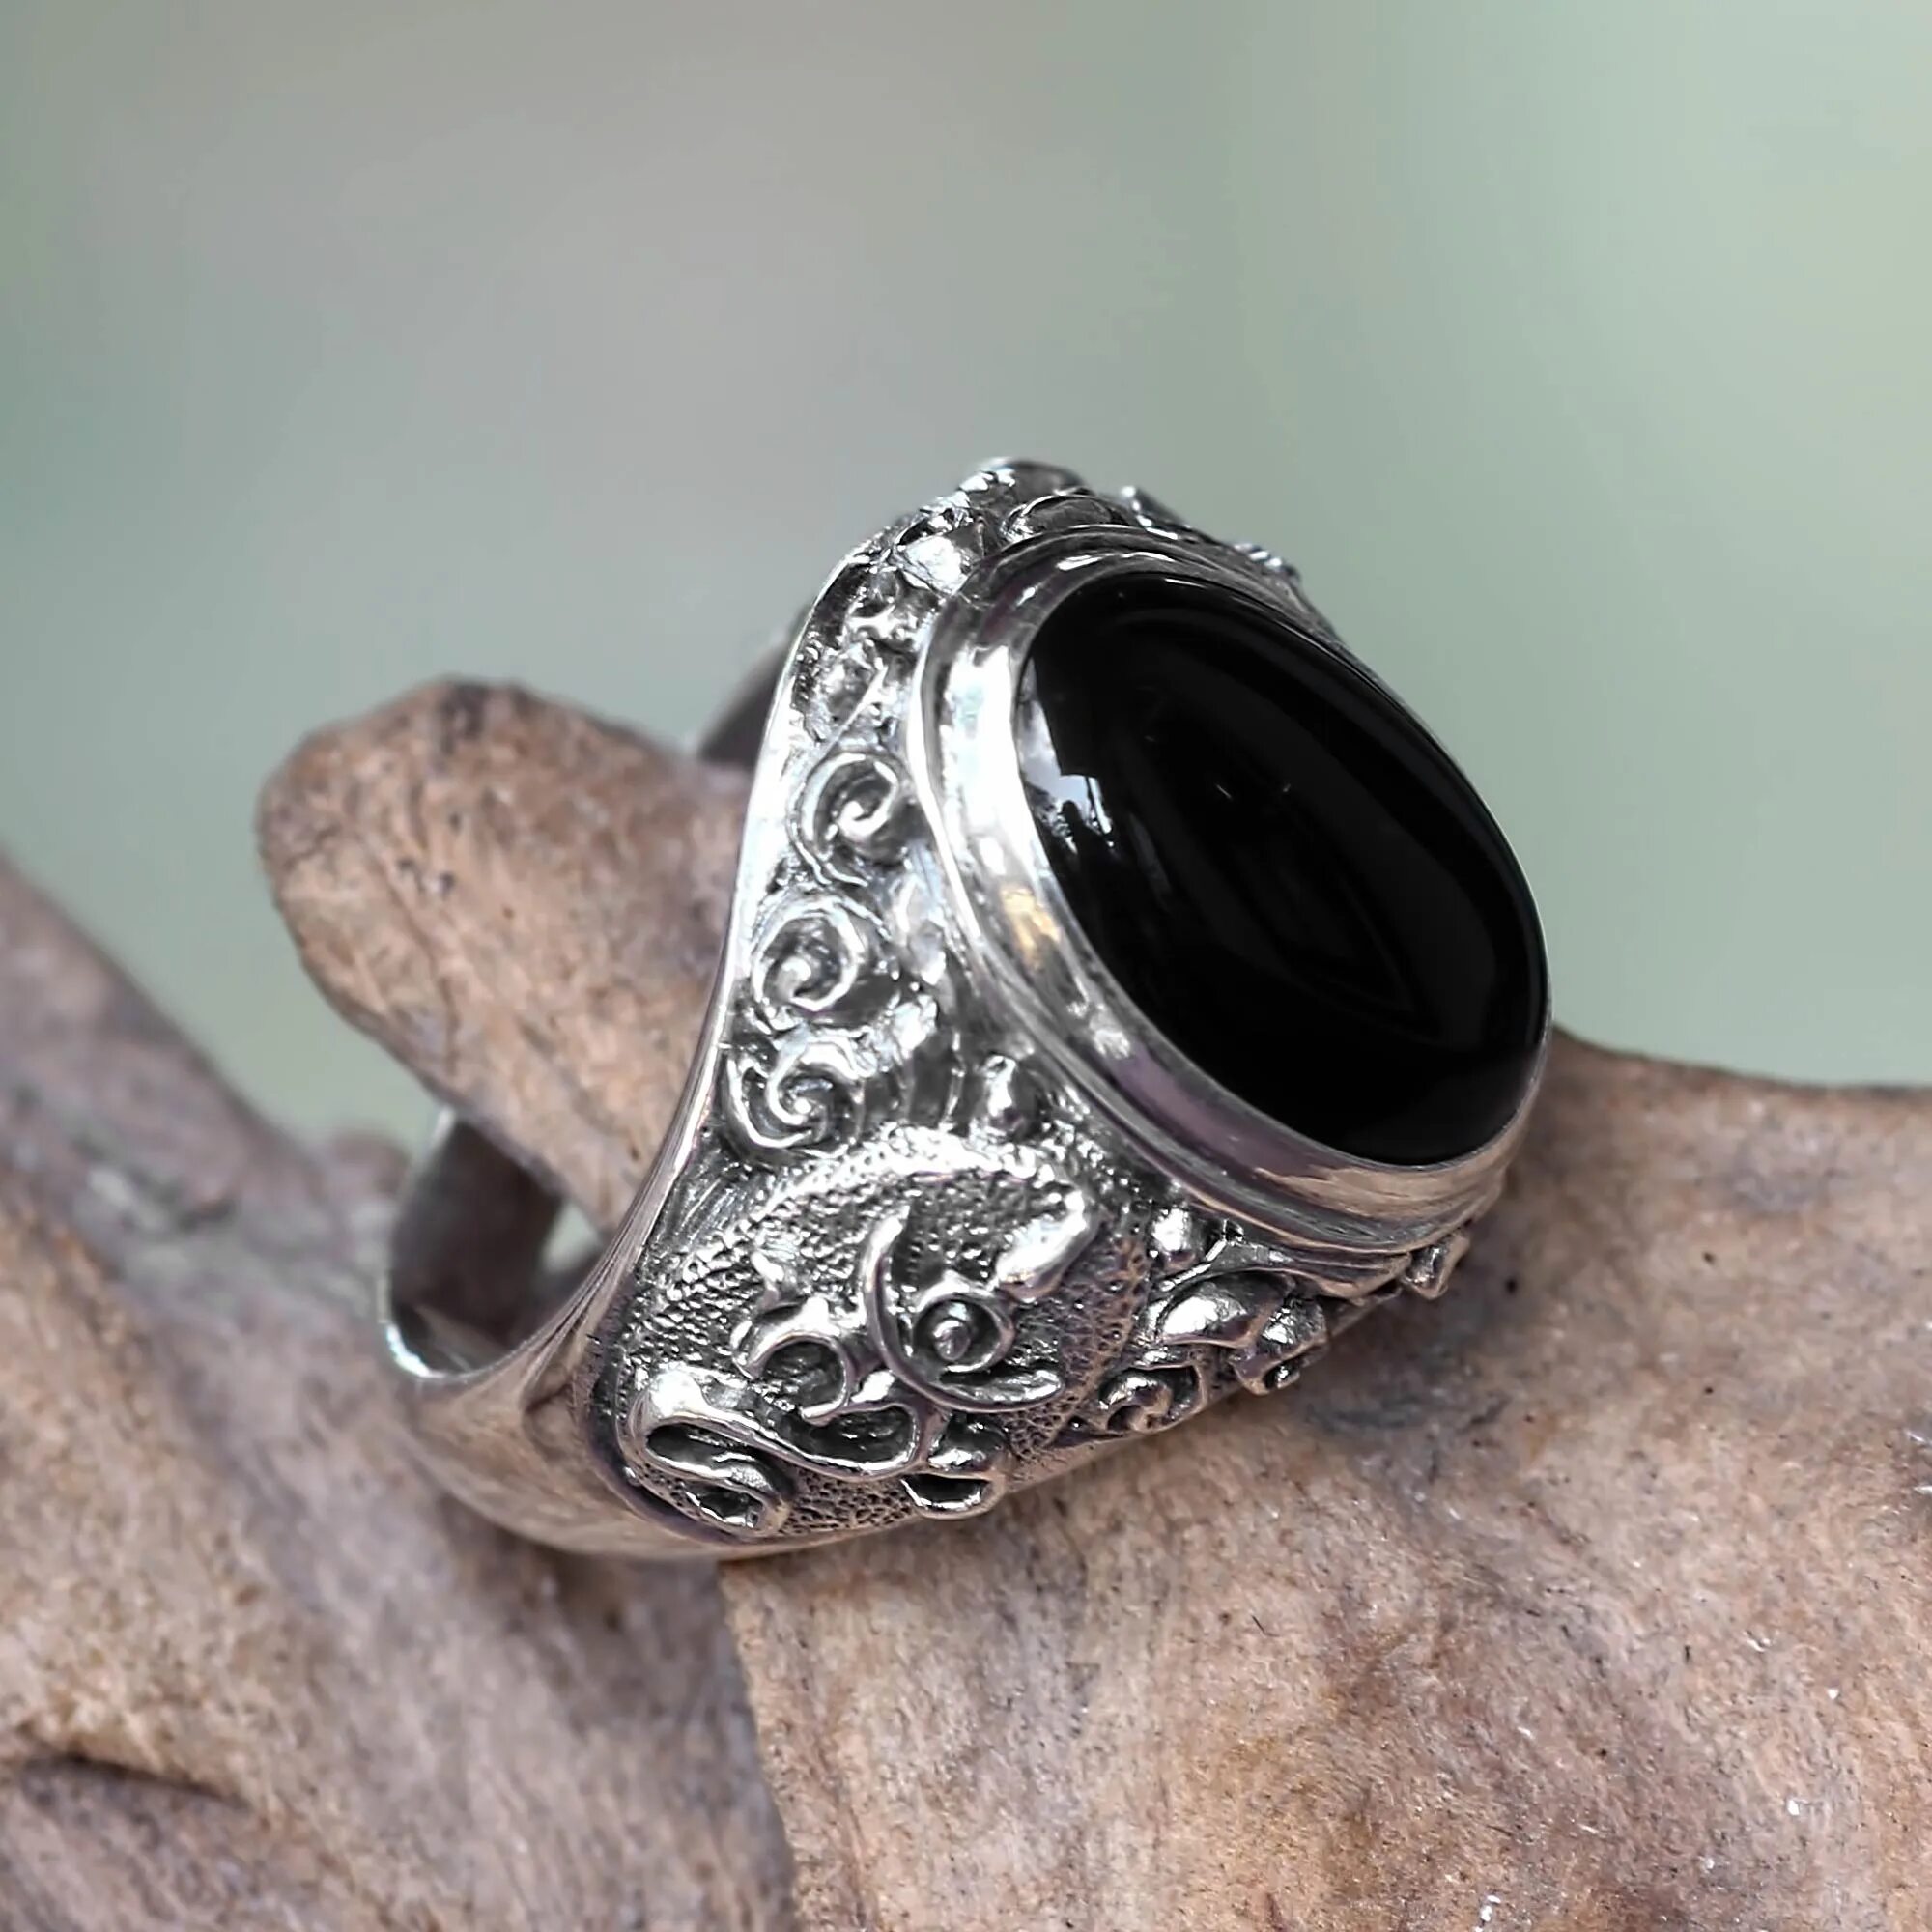 Фото черного серебра. Black Onyx Ring. Mens Silver Ring. Кольцо с черным ониксом в серебре. Кольцо с черным ониксом.